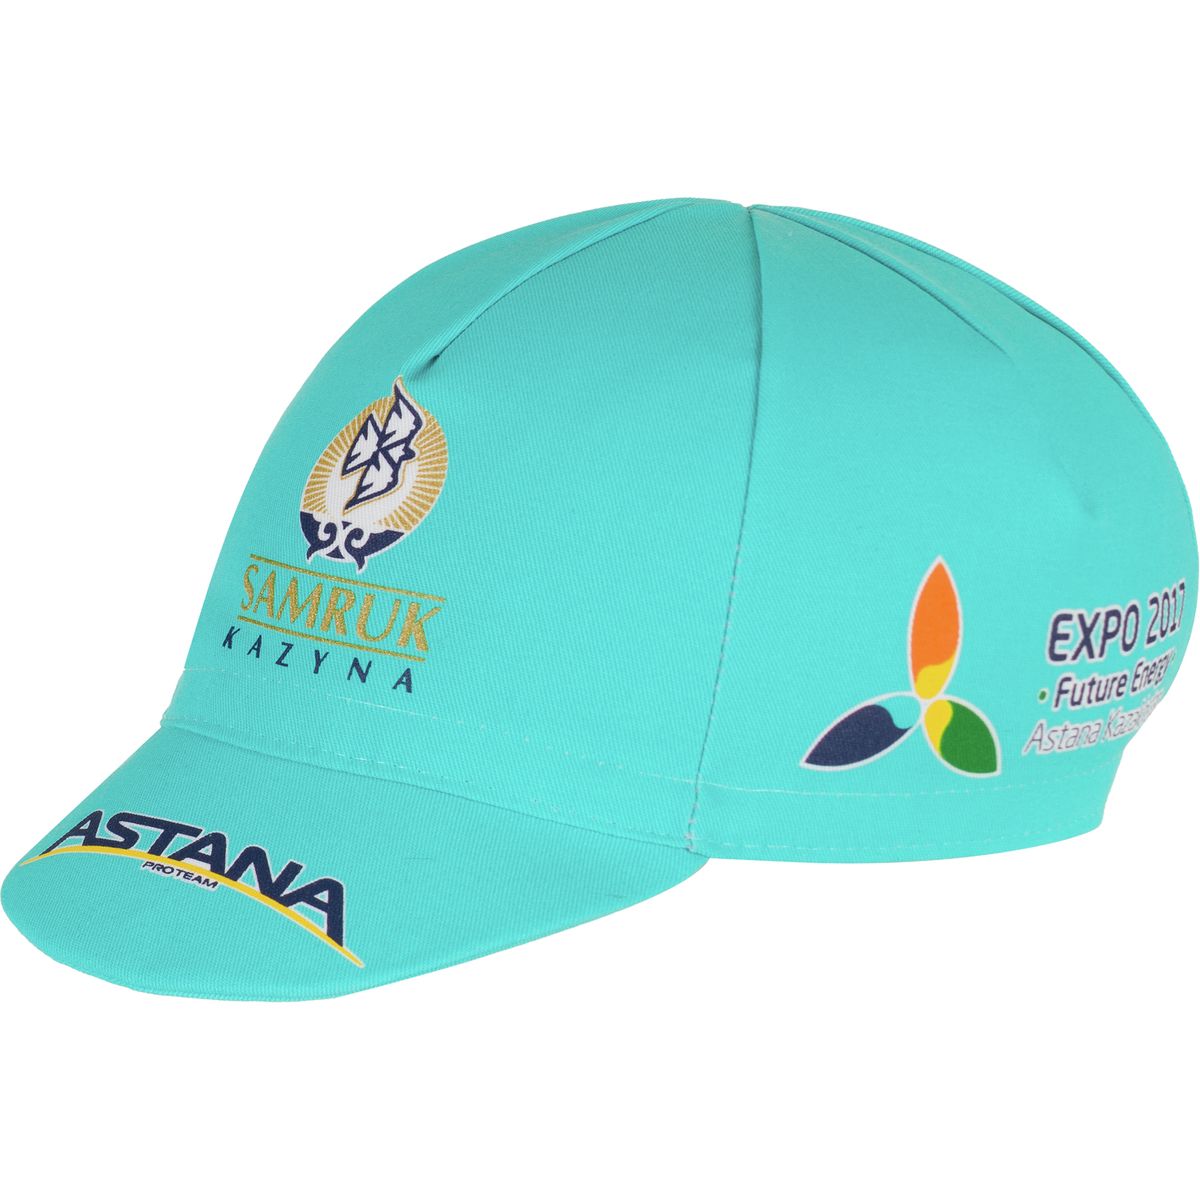 Giordana Astana Team Cap